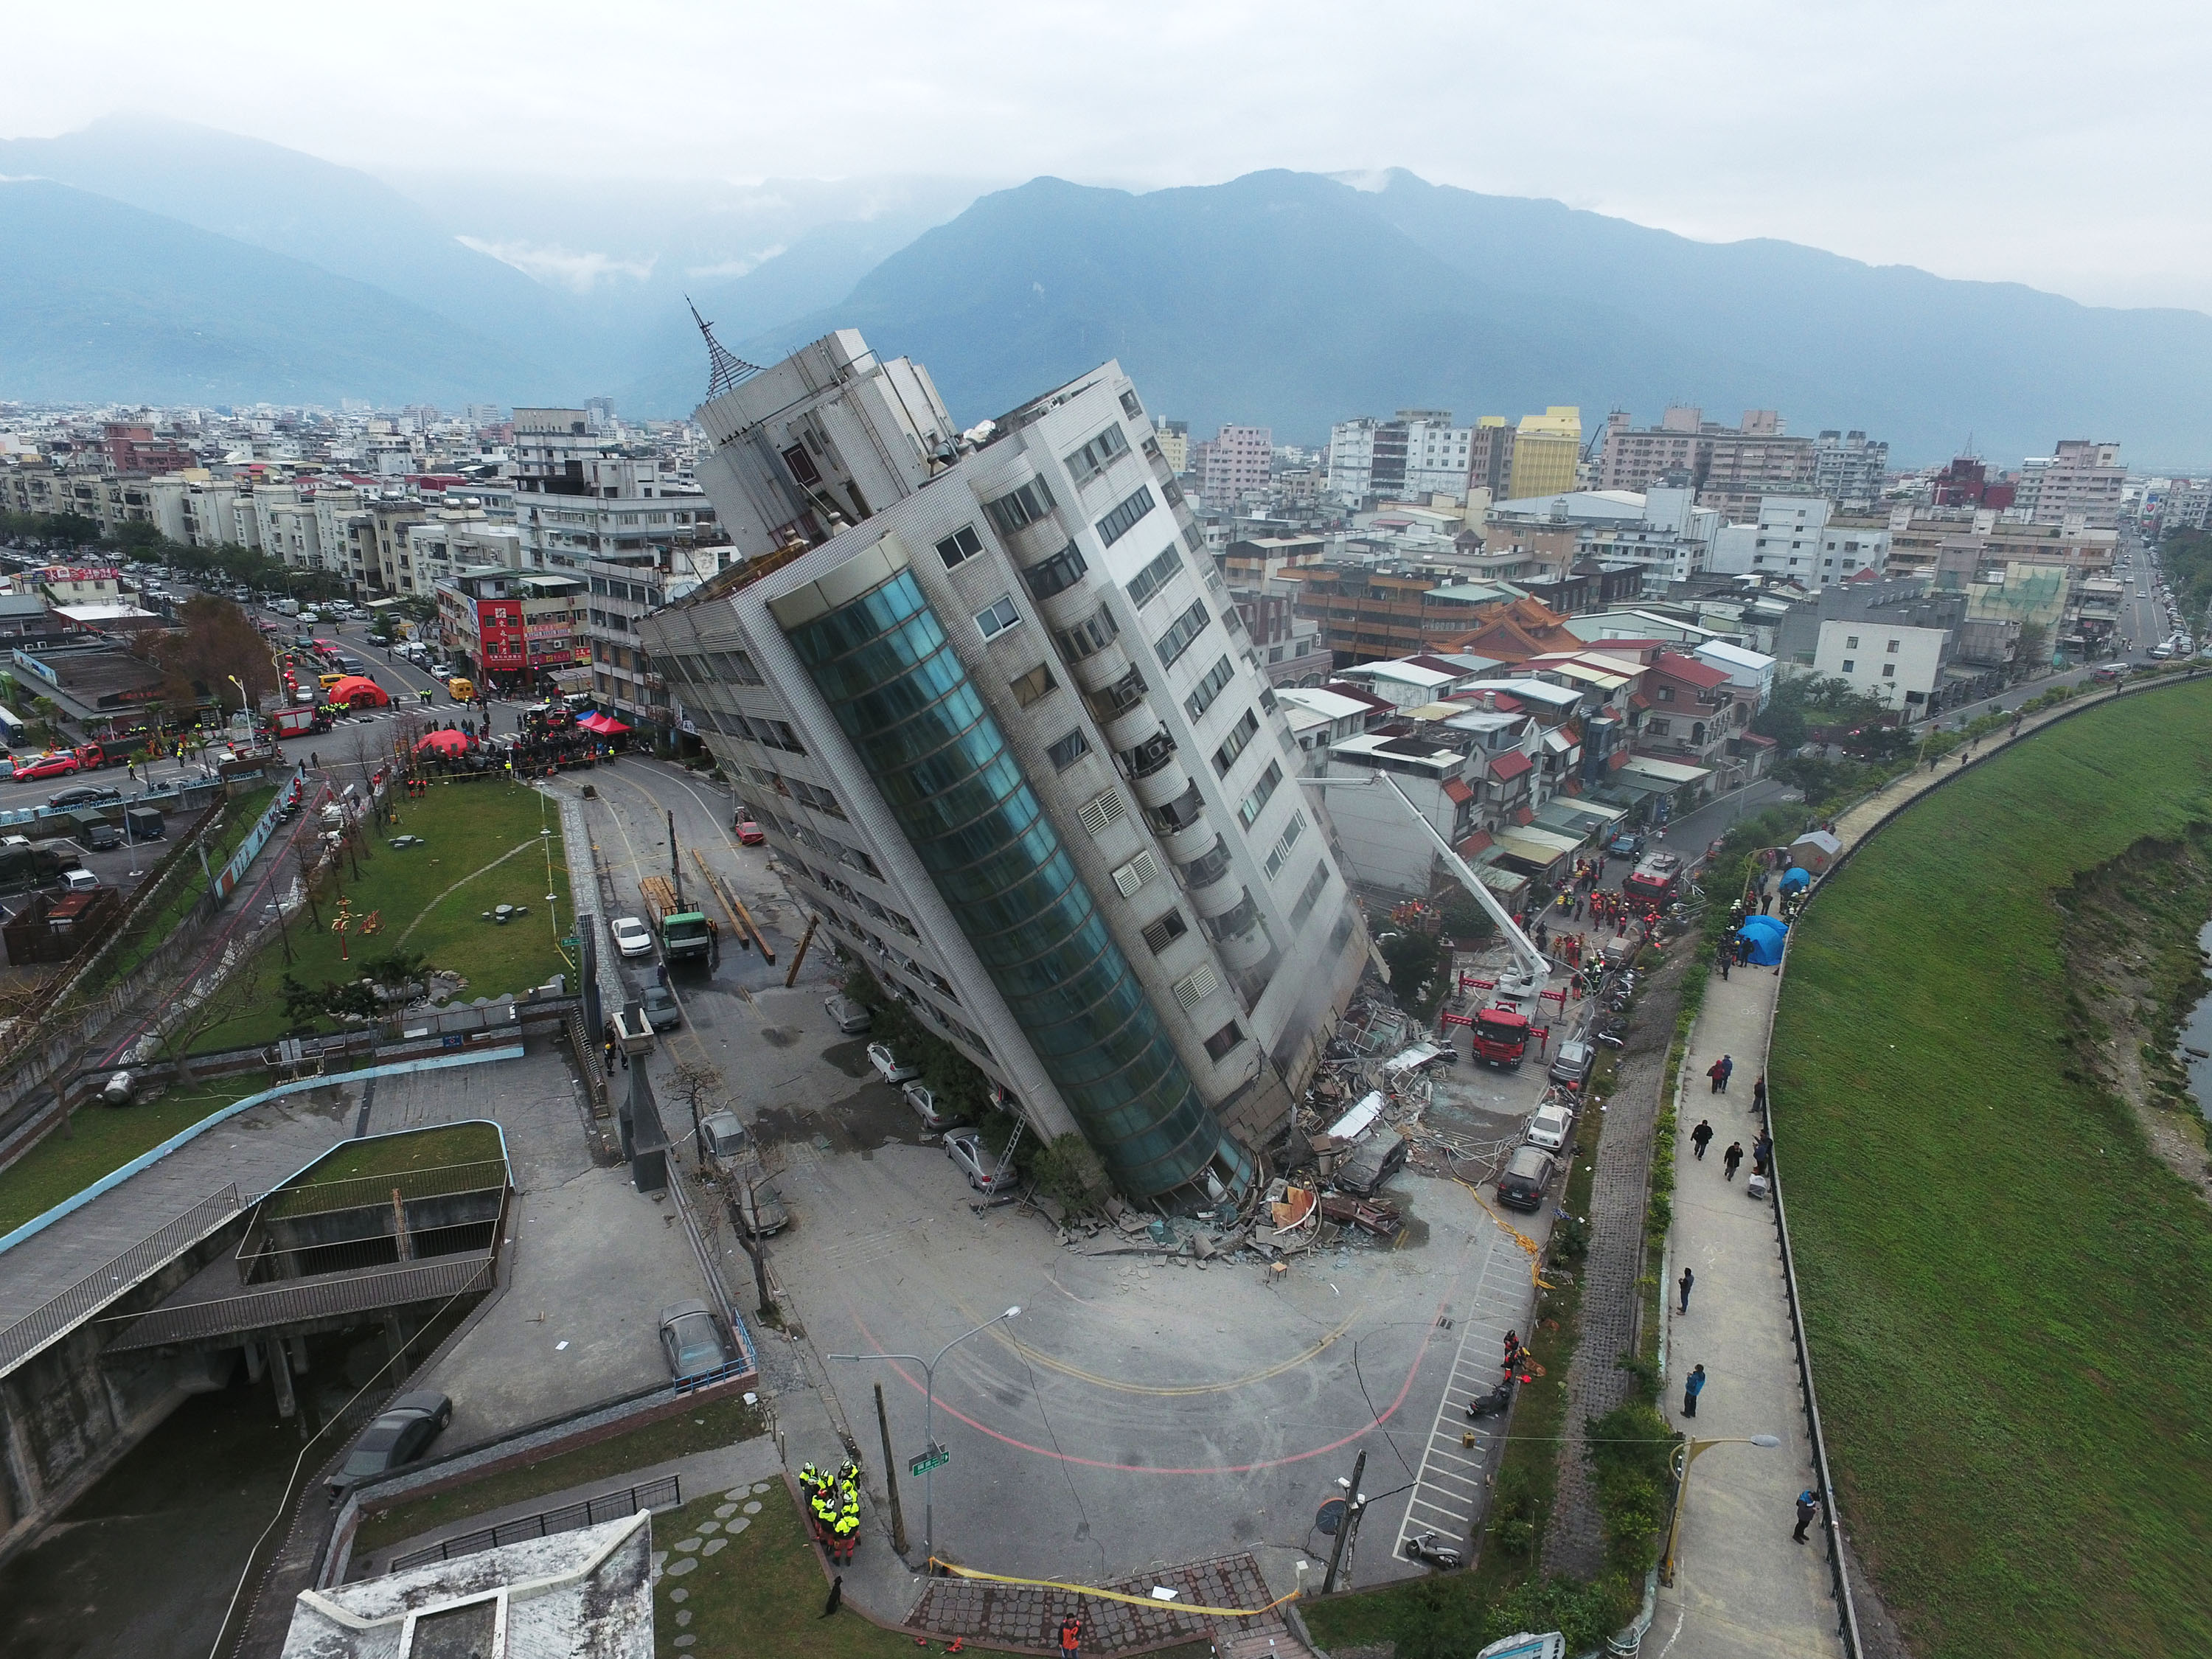 恐怖巧合!两年前同一天 台南维冠大楼震塌115人亡